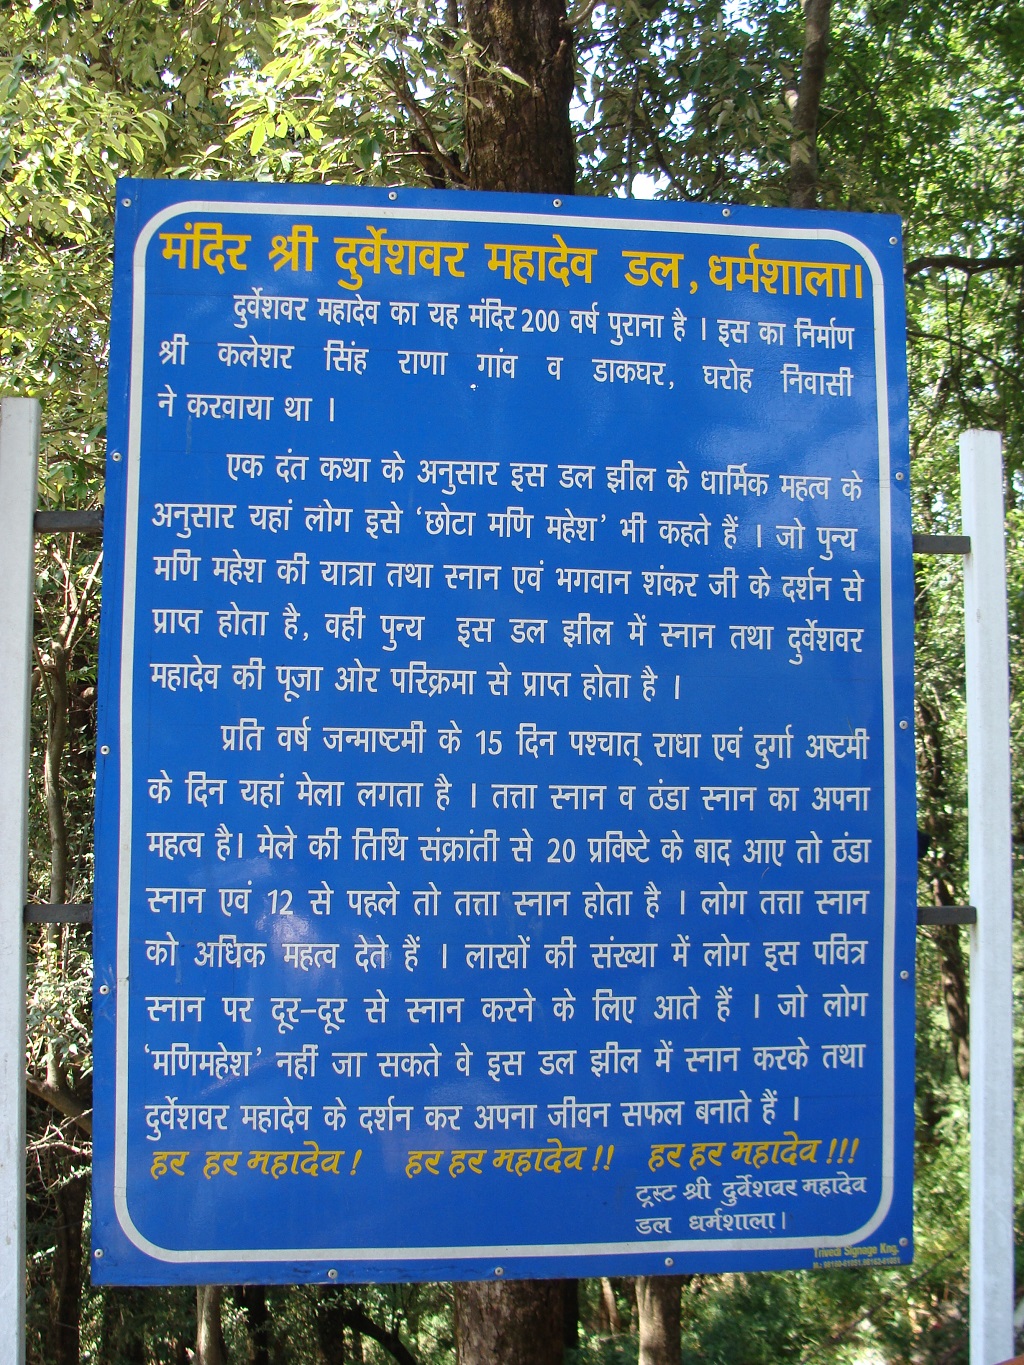 About: Mandir Shri Durveshvar Mahadev (Dal Lake) – Also known as Chhota Manimahesh